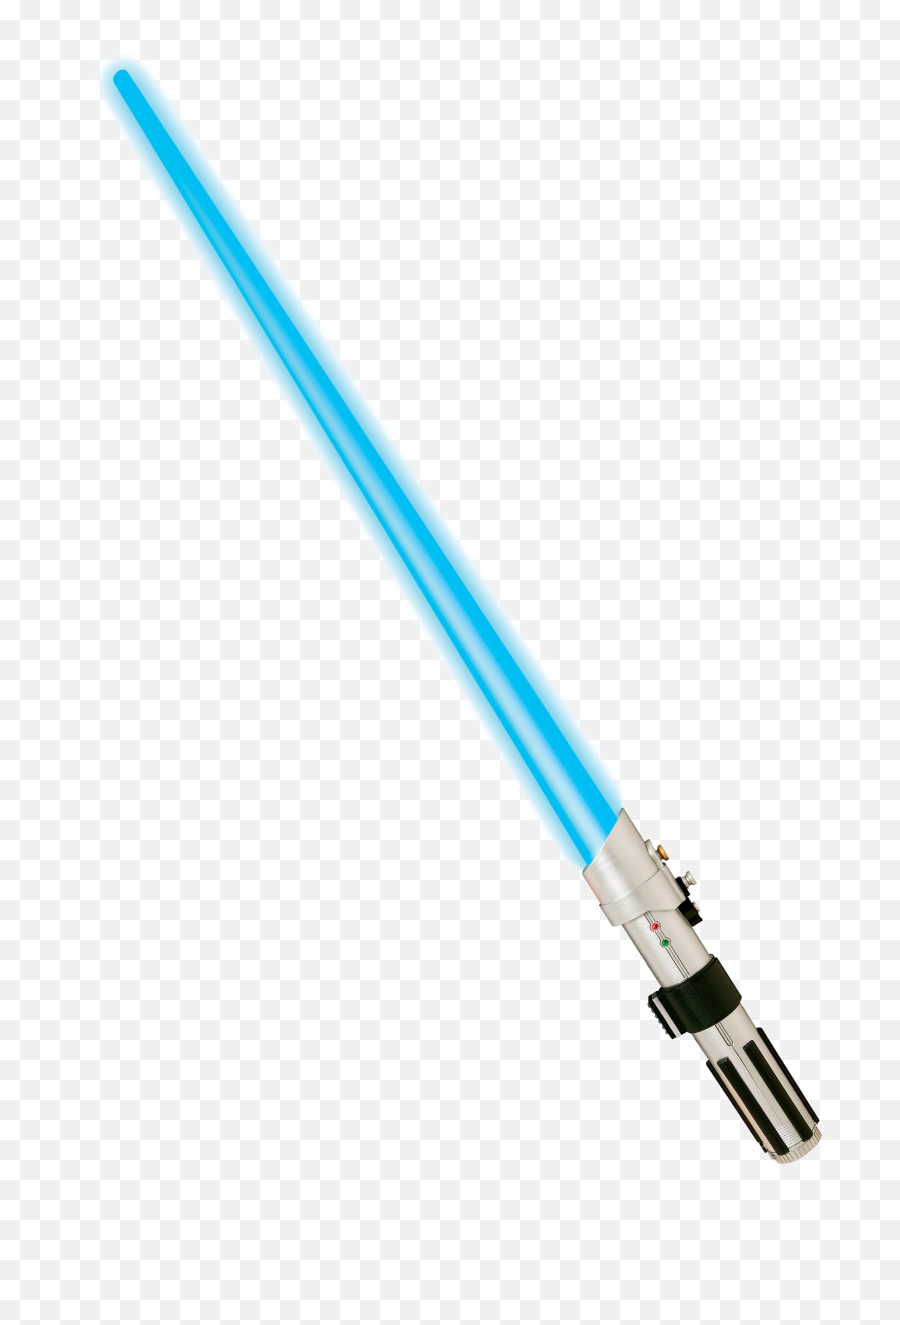 Download Blue Lightsaber Png Picture - Star Wars Lightsaber Blue,Lightsaber Png